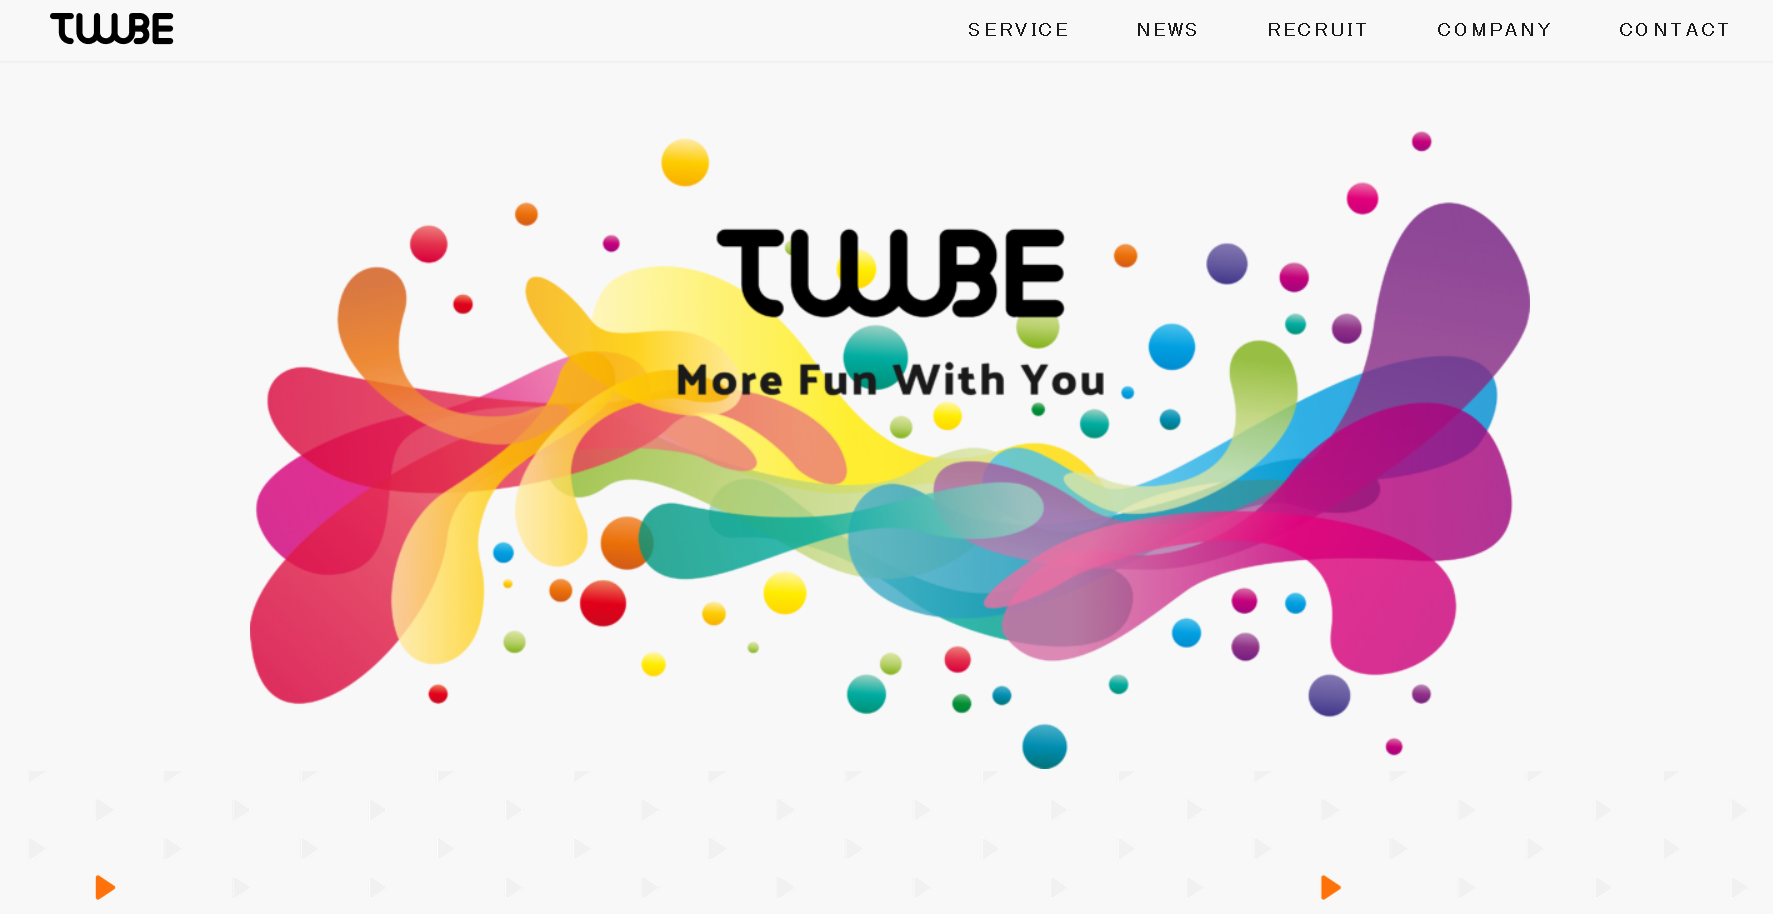 株式会社TUUUBEの株式会社TUUUBEサービス